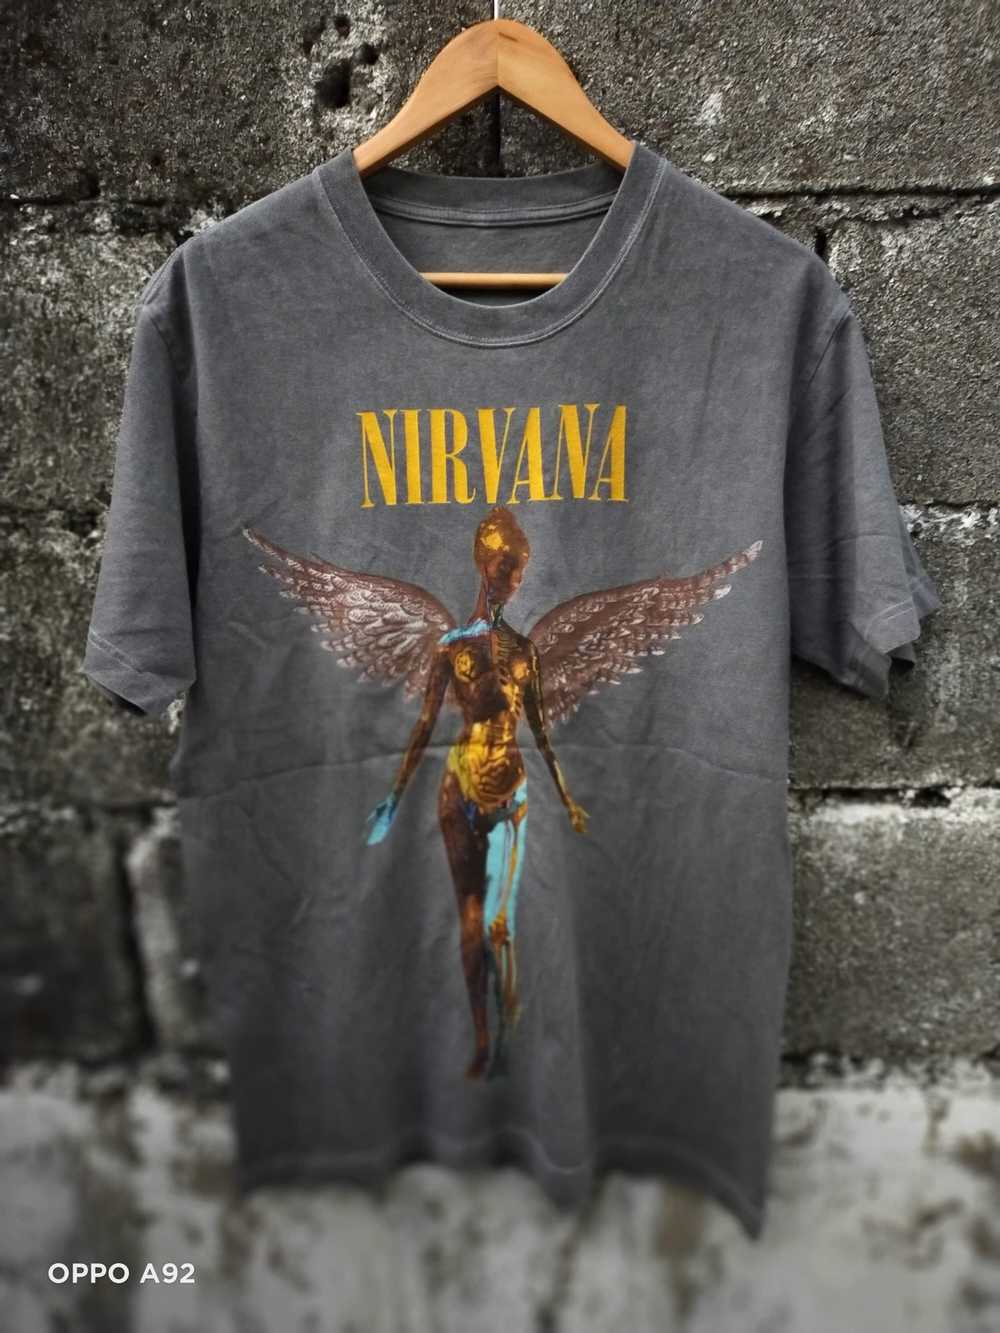 Vintage Nirvana - image 6